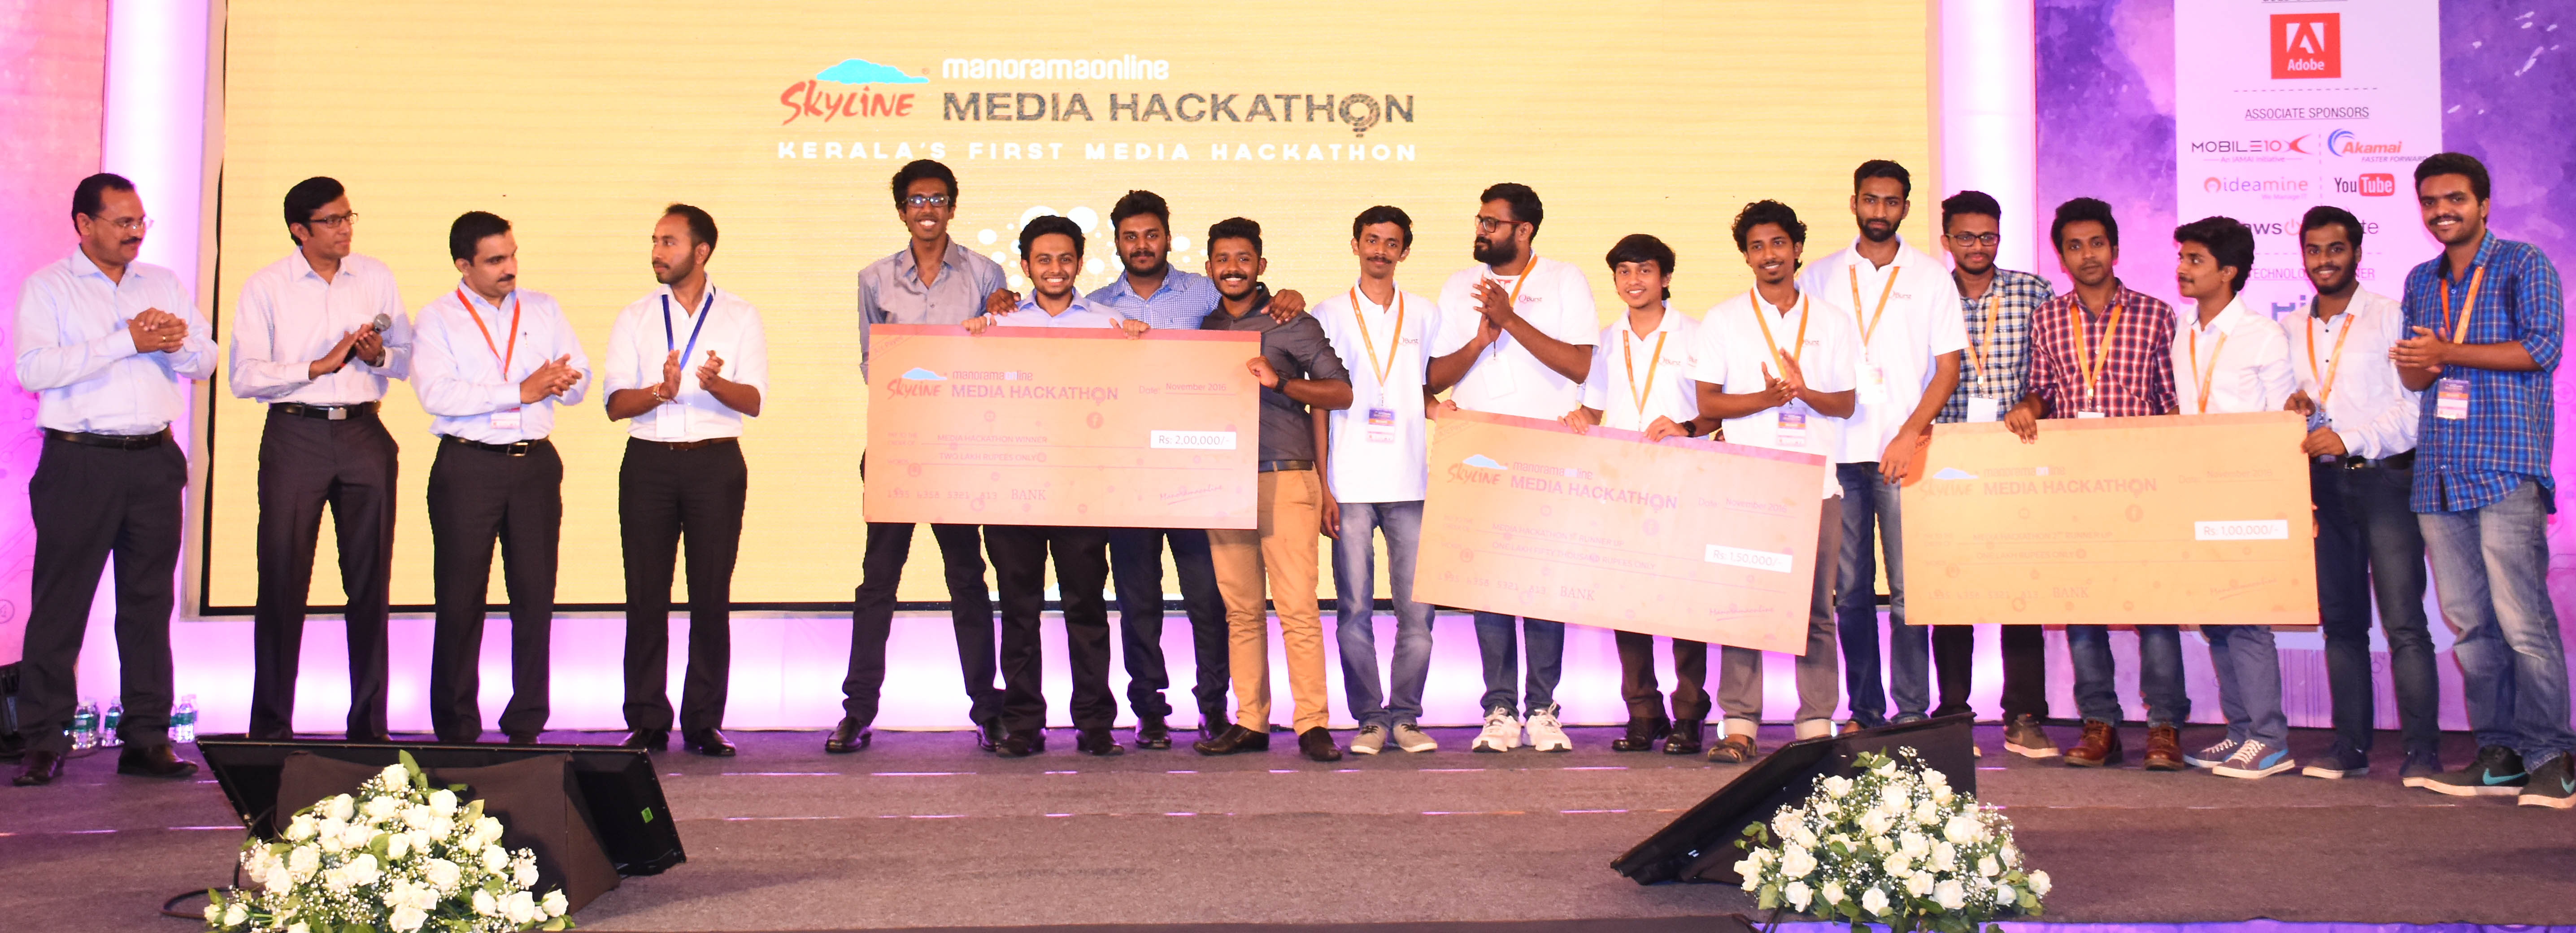 hackathon-finalists-jury-members